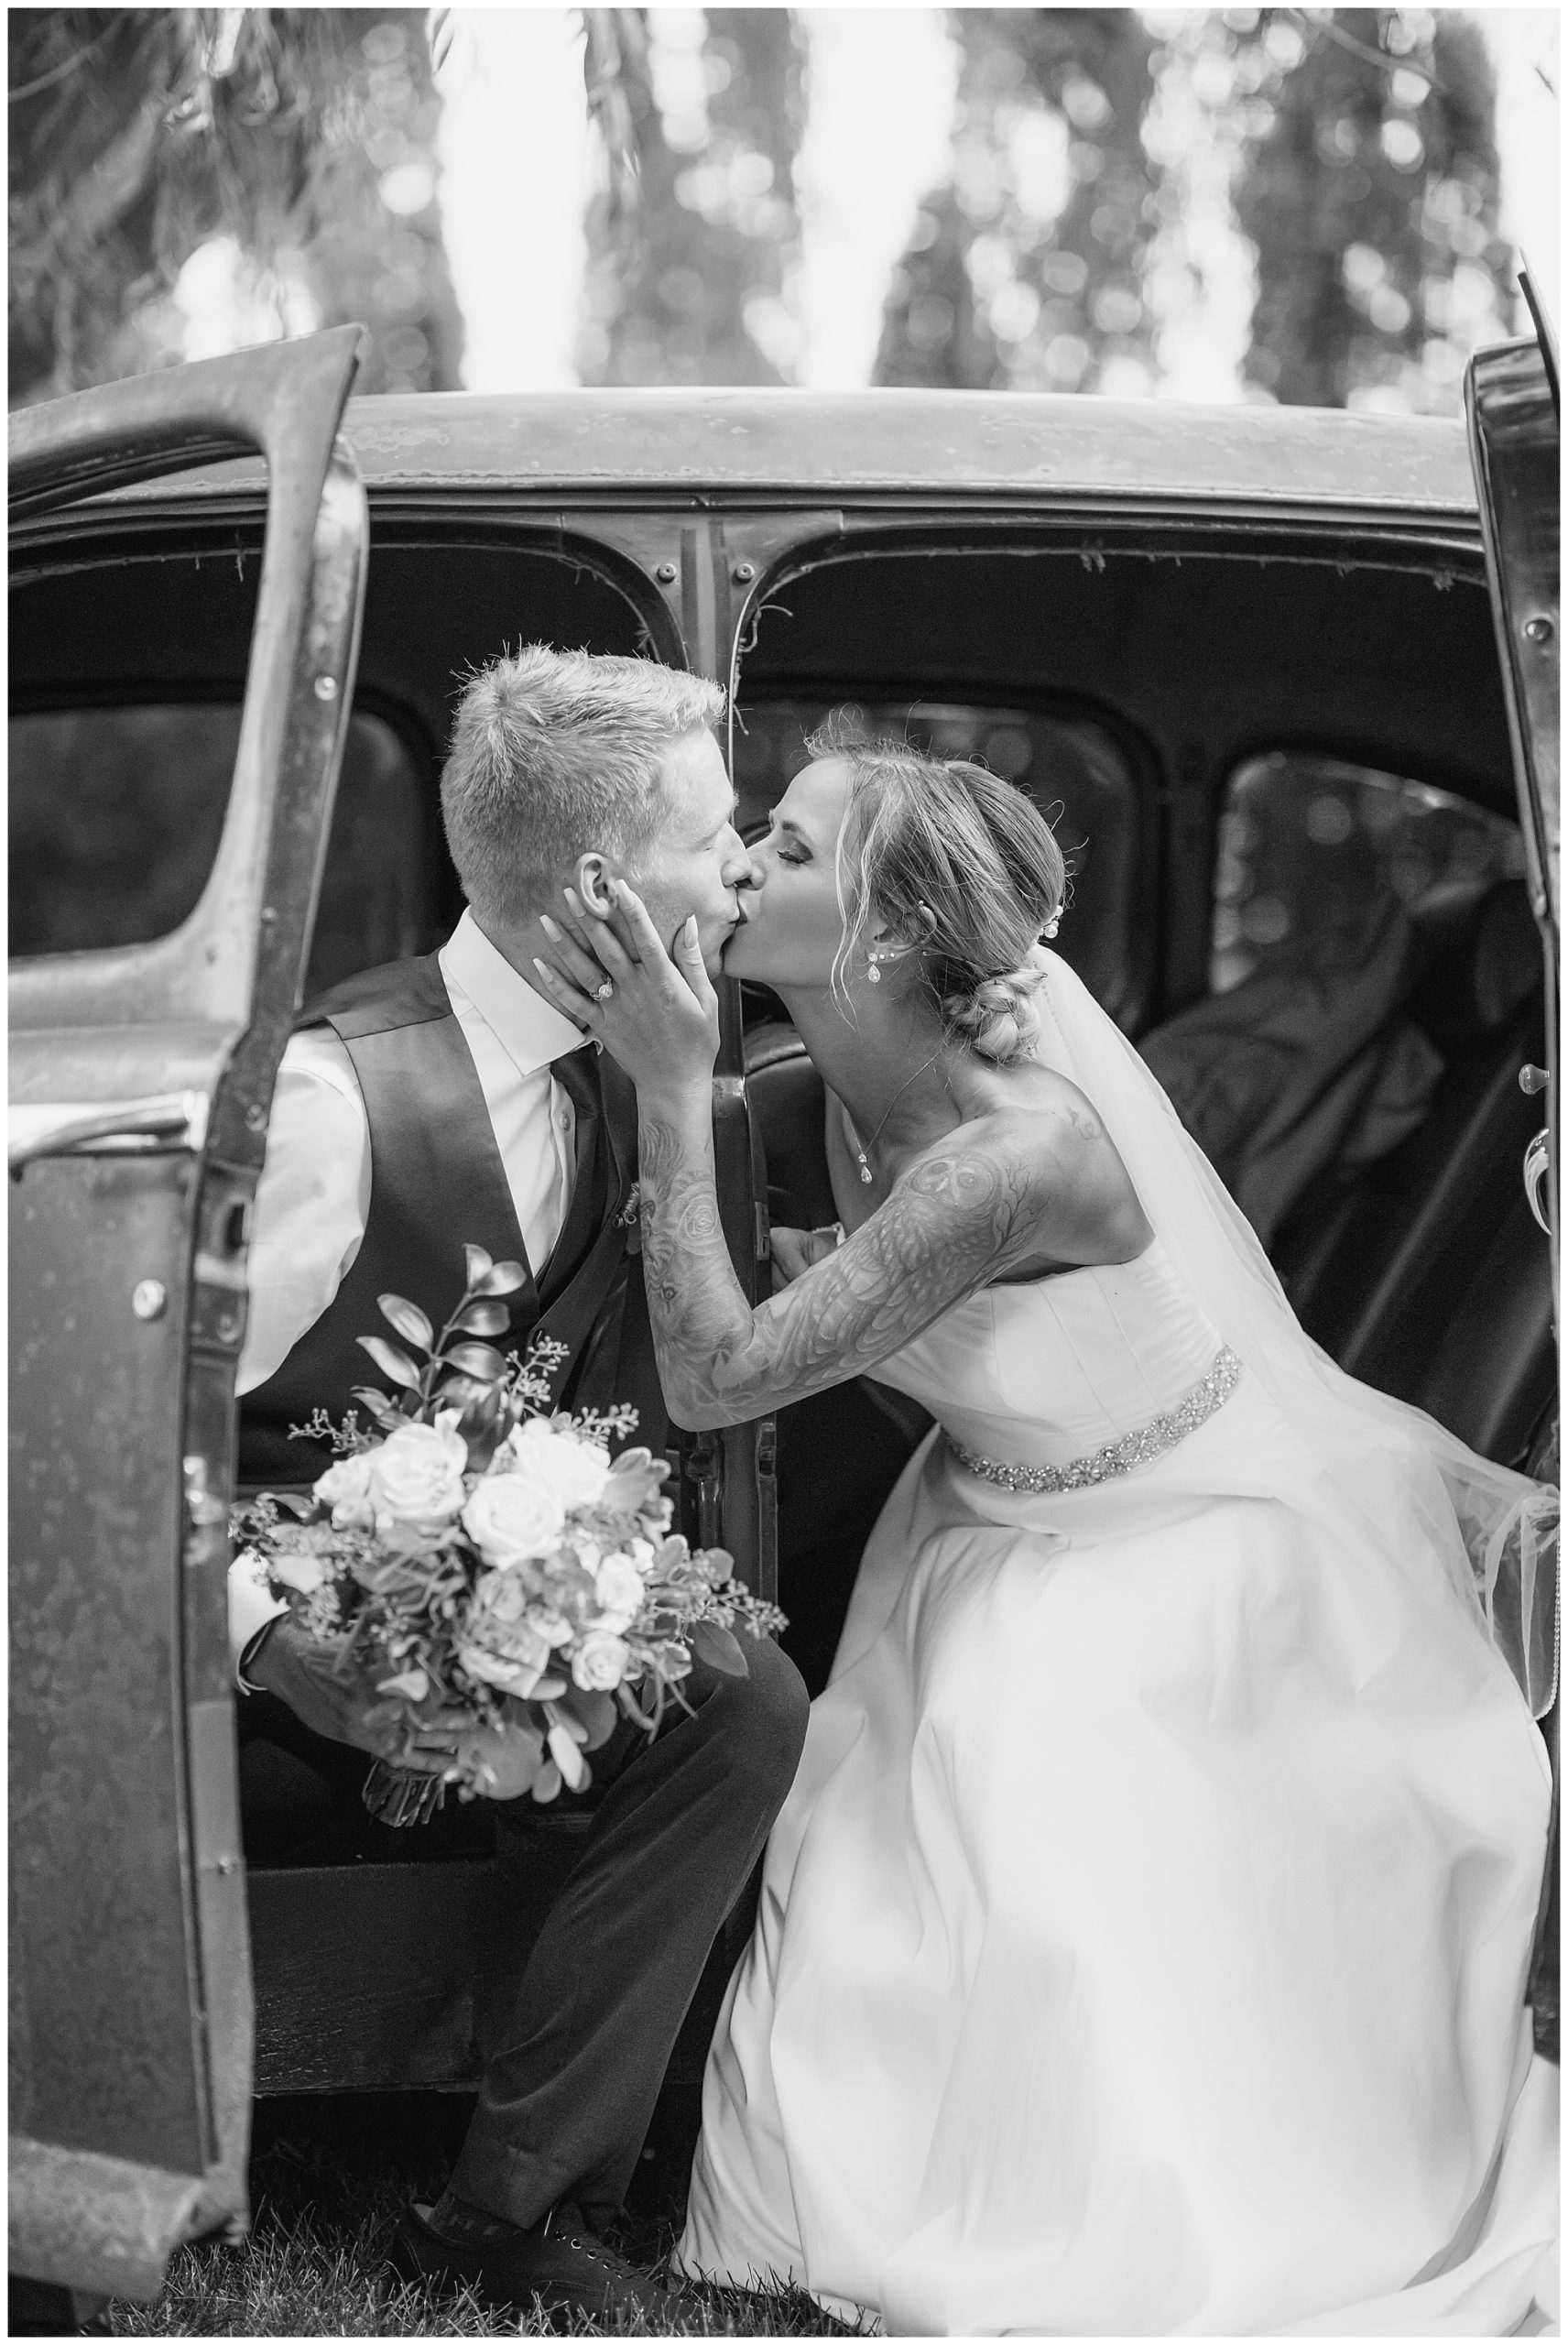 suicide door wedding kiss black and white 